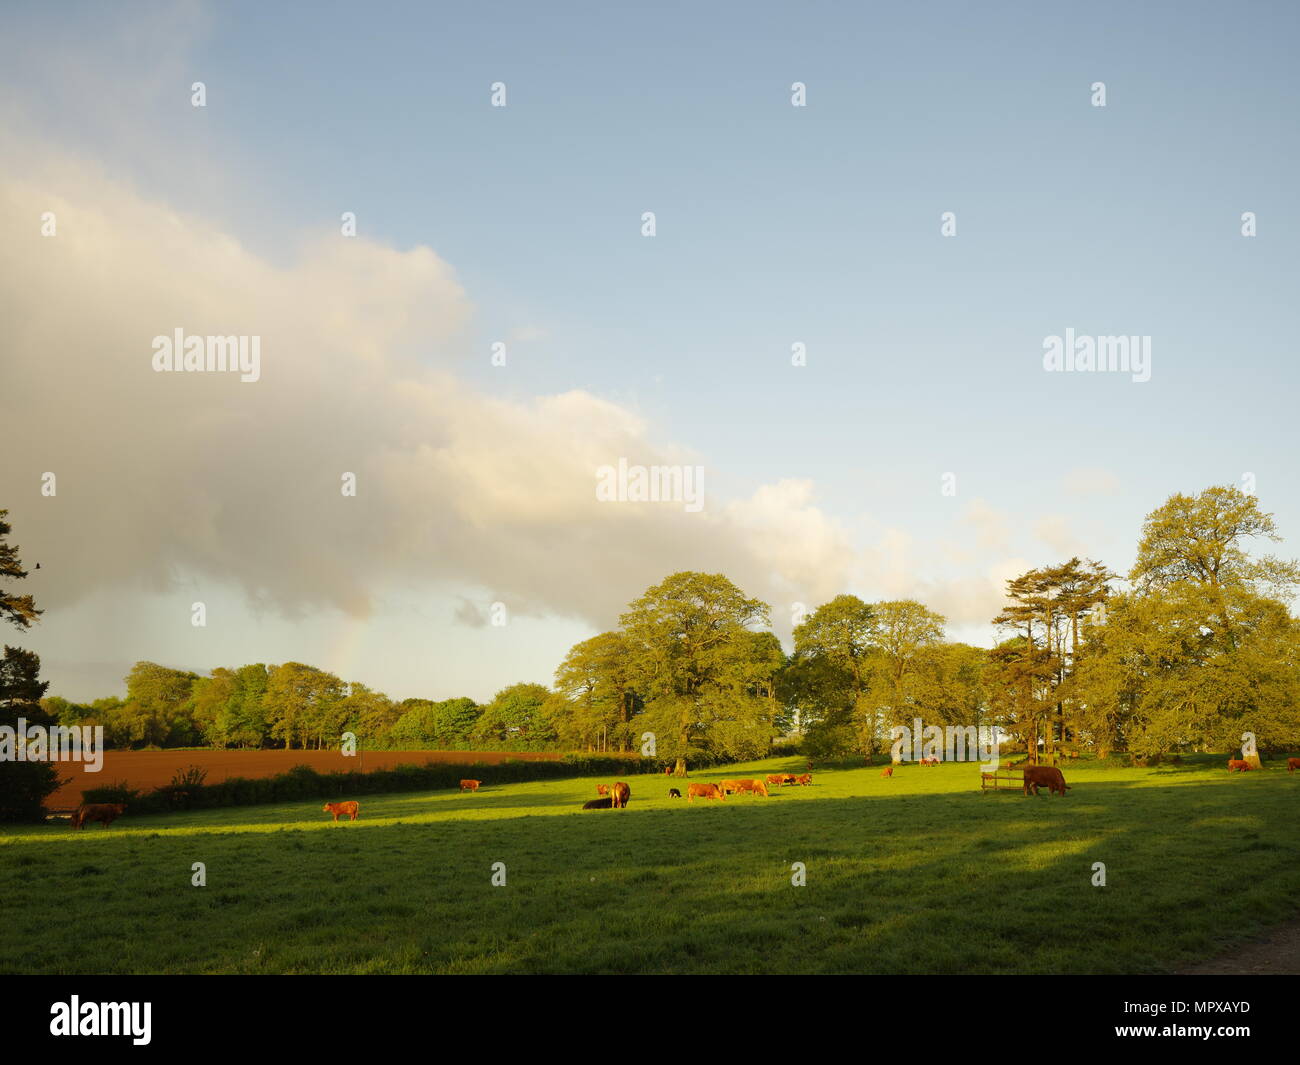 Le mucche al pascolo in un campo, la mattina presto luce, ombre sull'erba. Foto Stock